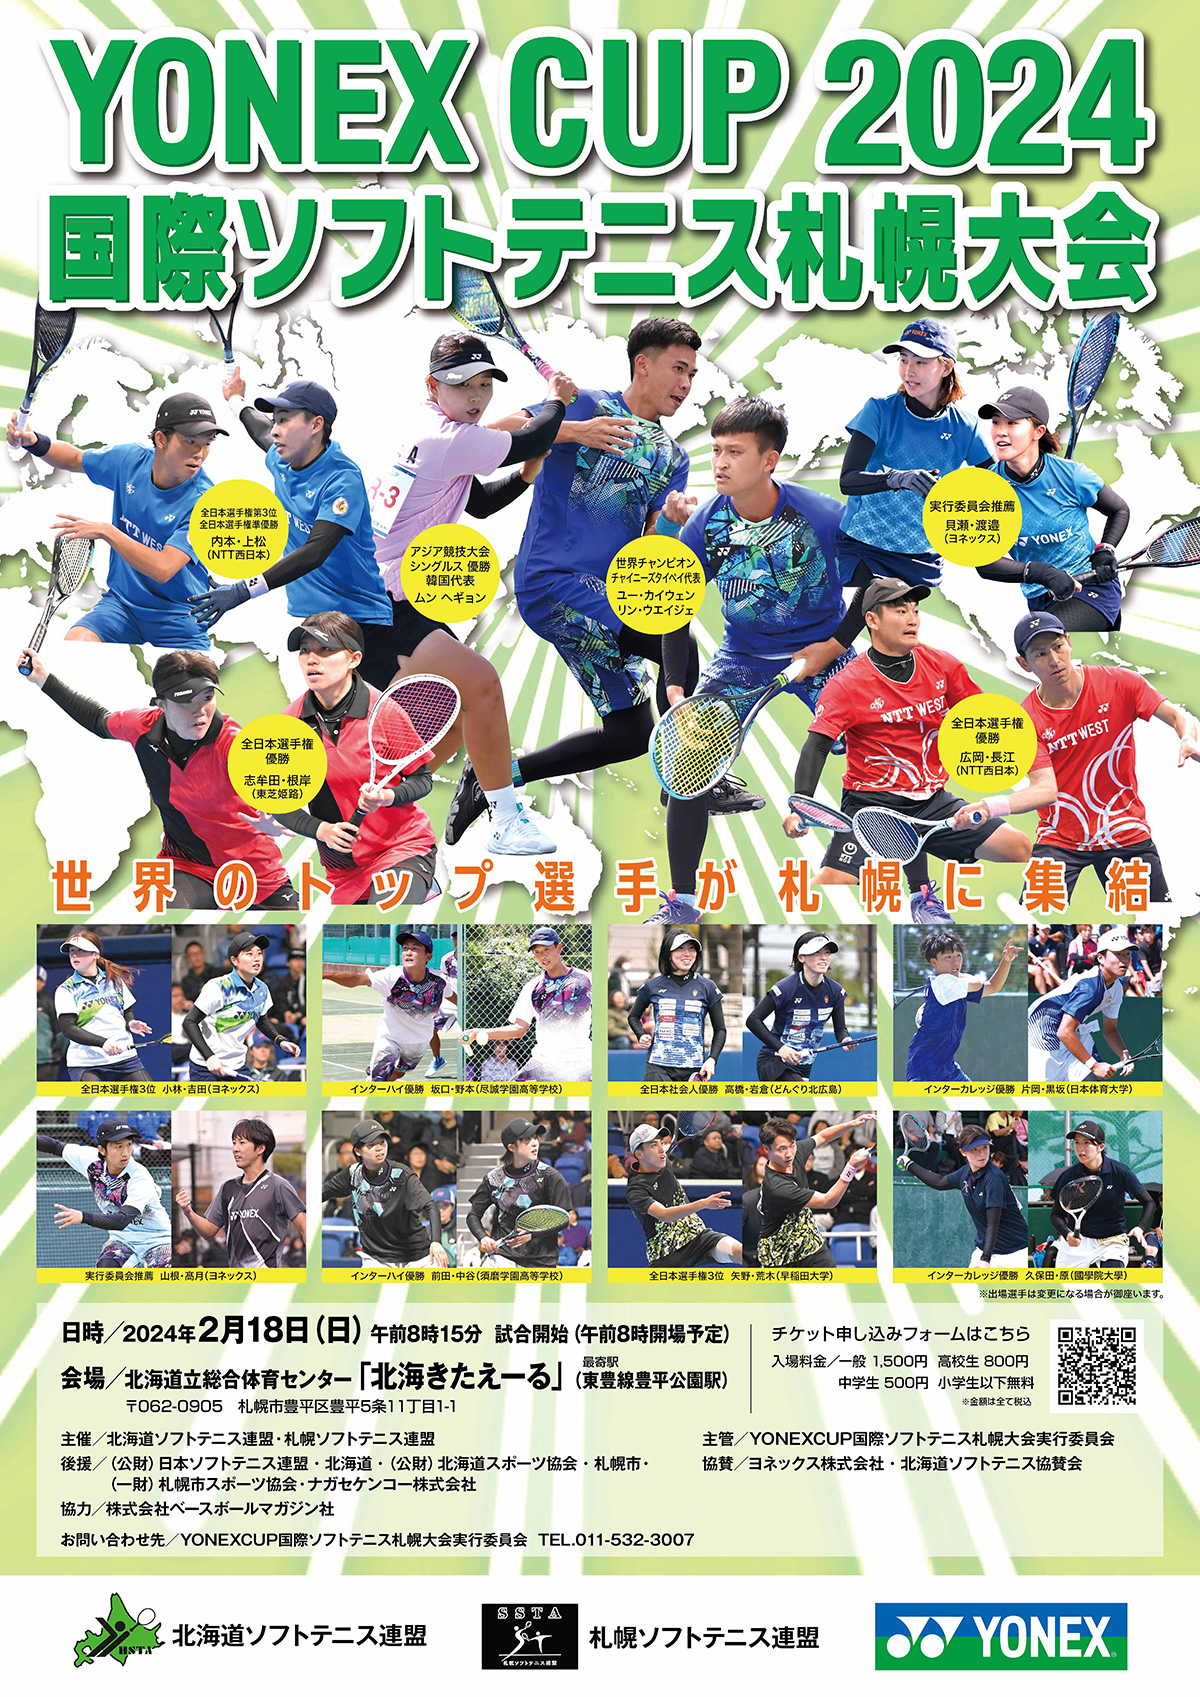 札幌へ世界のトッププレーを見に行こう！ 「北海きたえーる」にて 『YONEX CUP 2024 国際ソフトテニス札幌大会』を開催